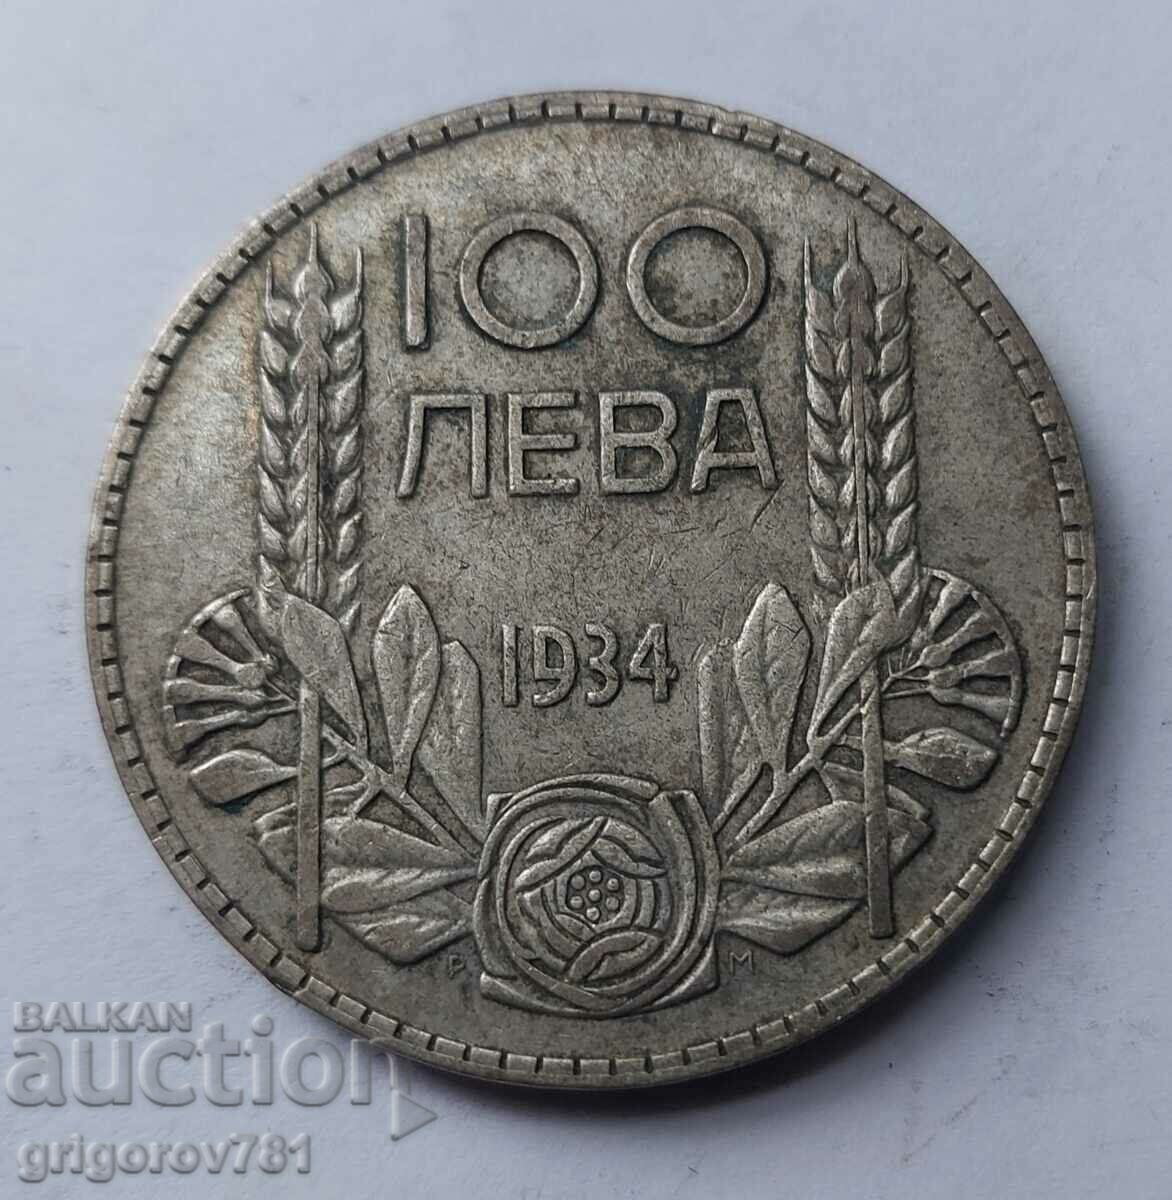 Ασήμι 100 λέβα Βουλγαρία 1934 - ασημένιο νόμισμα #43